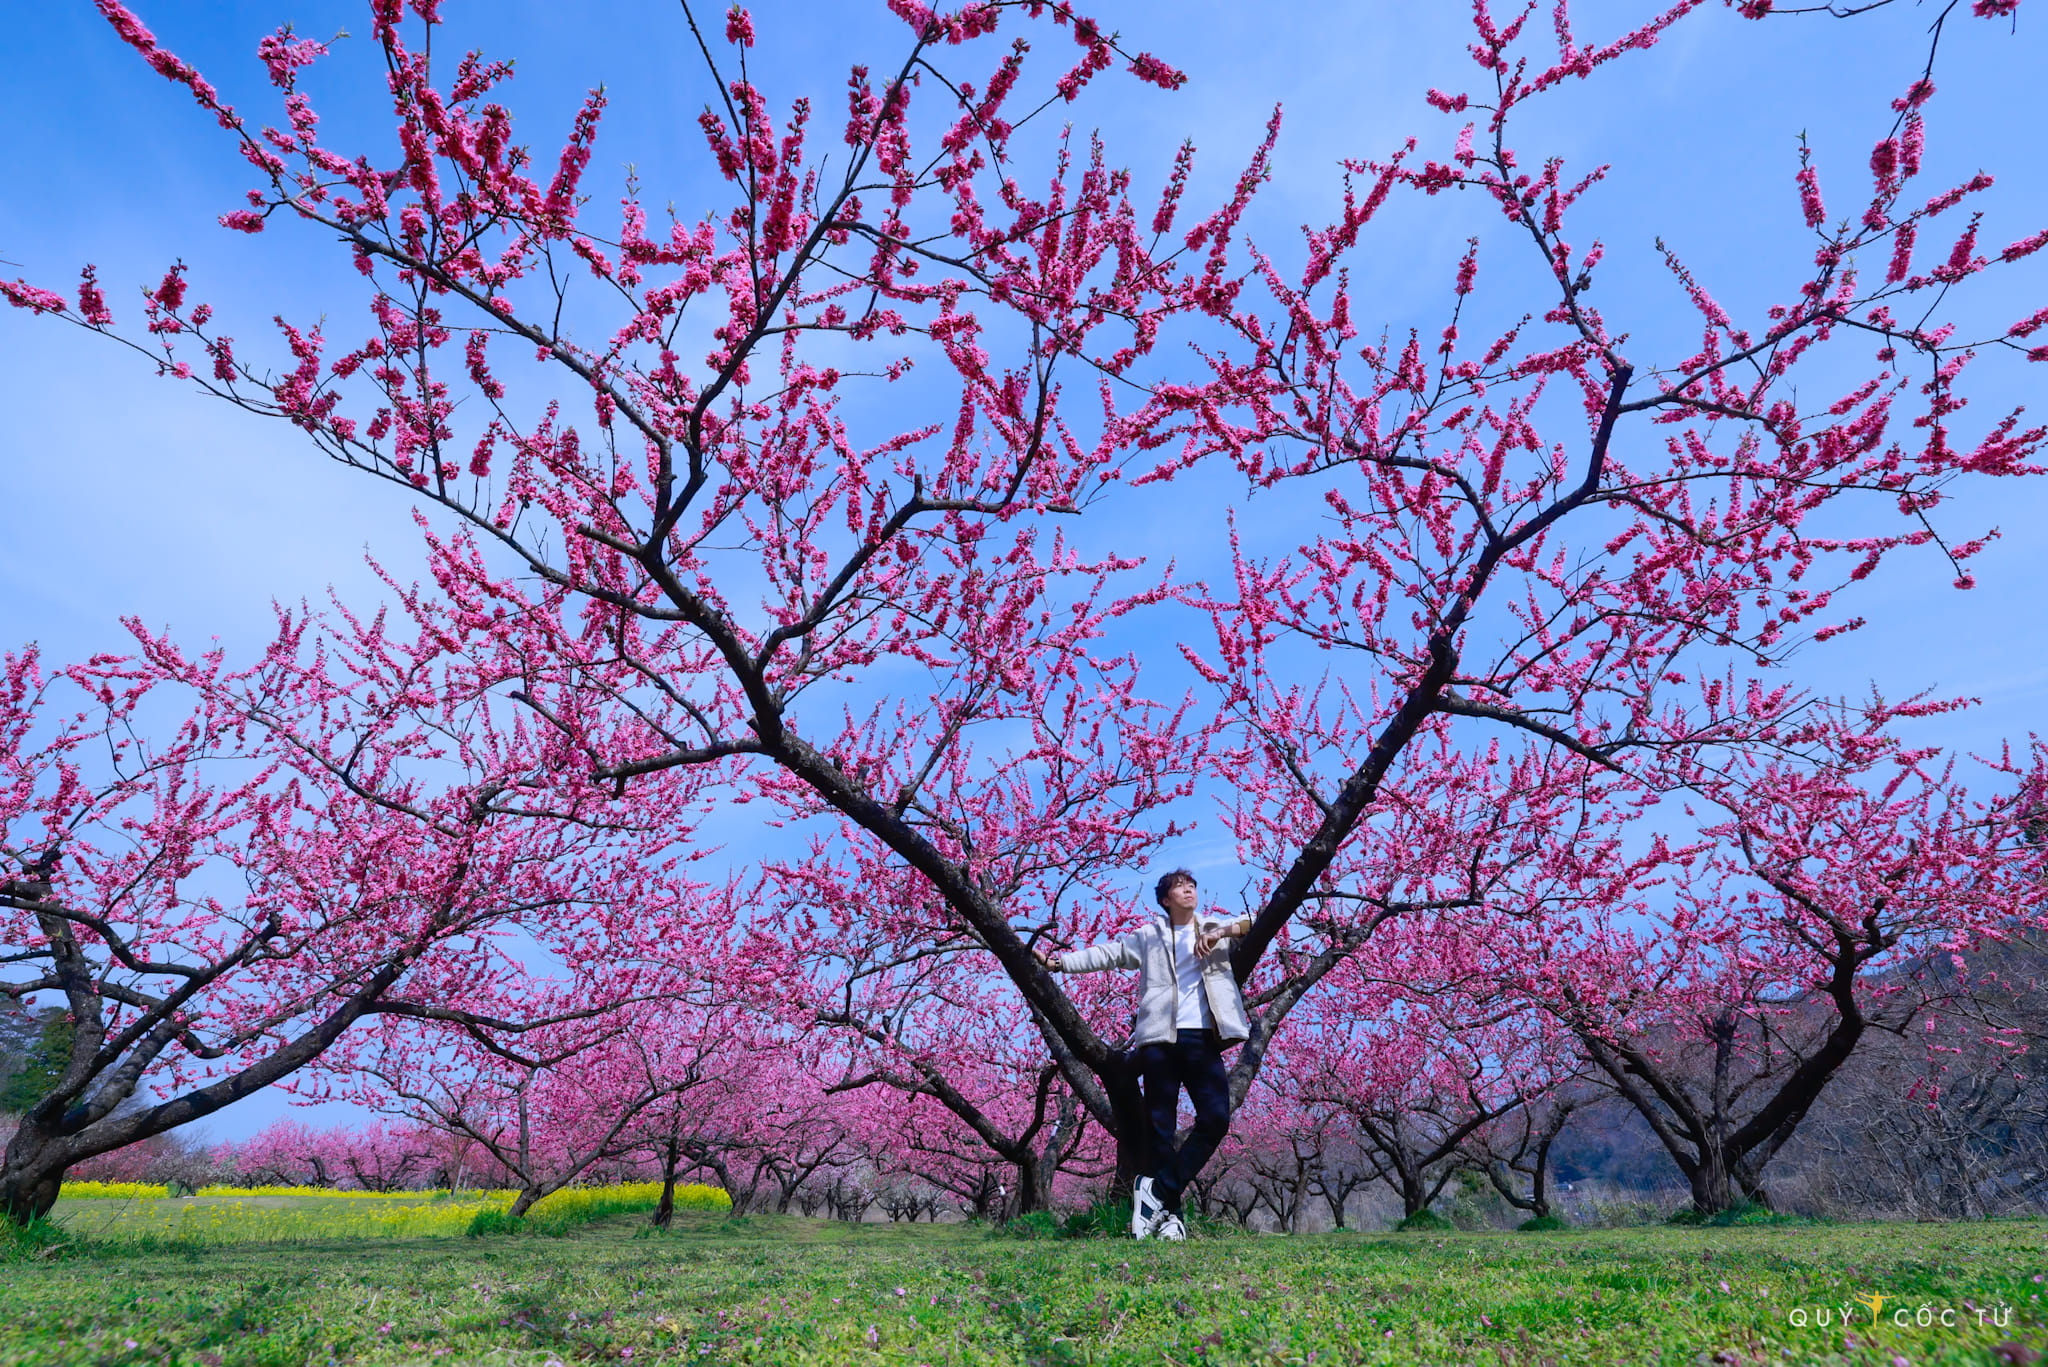 Điểm đặc biệt của vườn hoa Hanamomo no Sato là miễn phí tham quan và không đông đúc khách tham quan như những điểm nổi tiếng nên bạn được tự do vào vườn chụp ảnh, ngắm hoa thoải mái mà không lo chen lấn. Ngoài ra, du khách vẫn có thể ủng hộ tùy tâm để nhà vườn có thêm kinh phí chăm sóc cây cối.